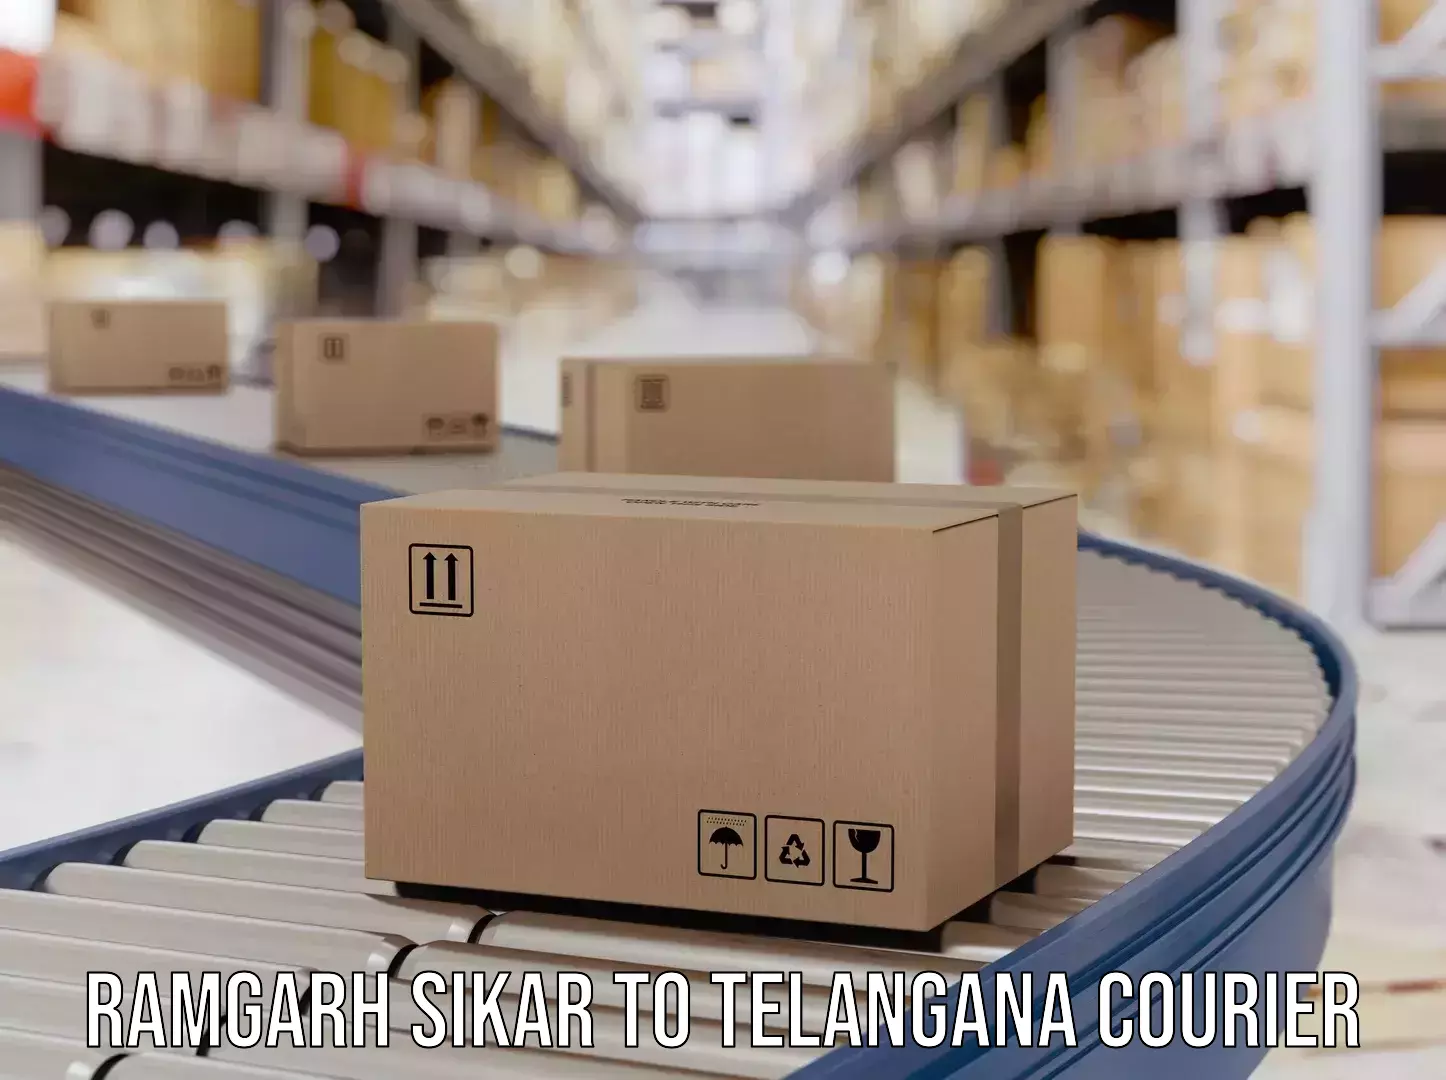 Global shipping networks Ramgarh Sikar to Dornakal